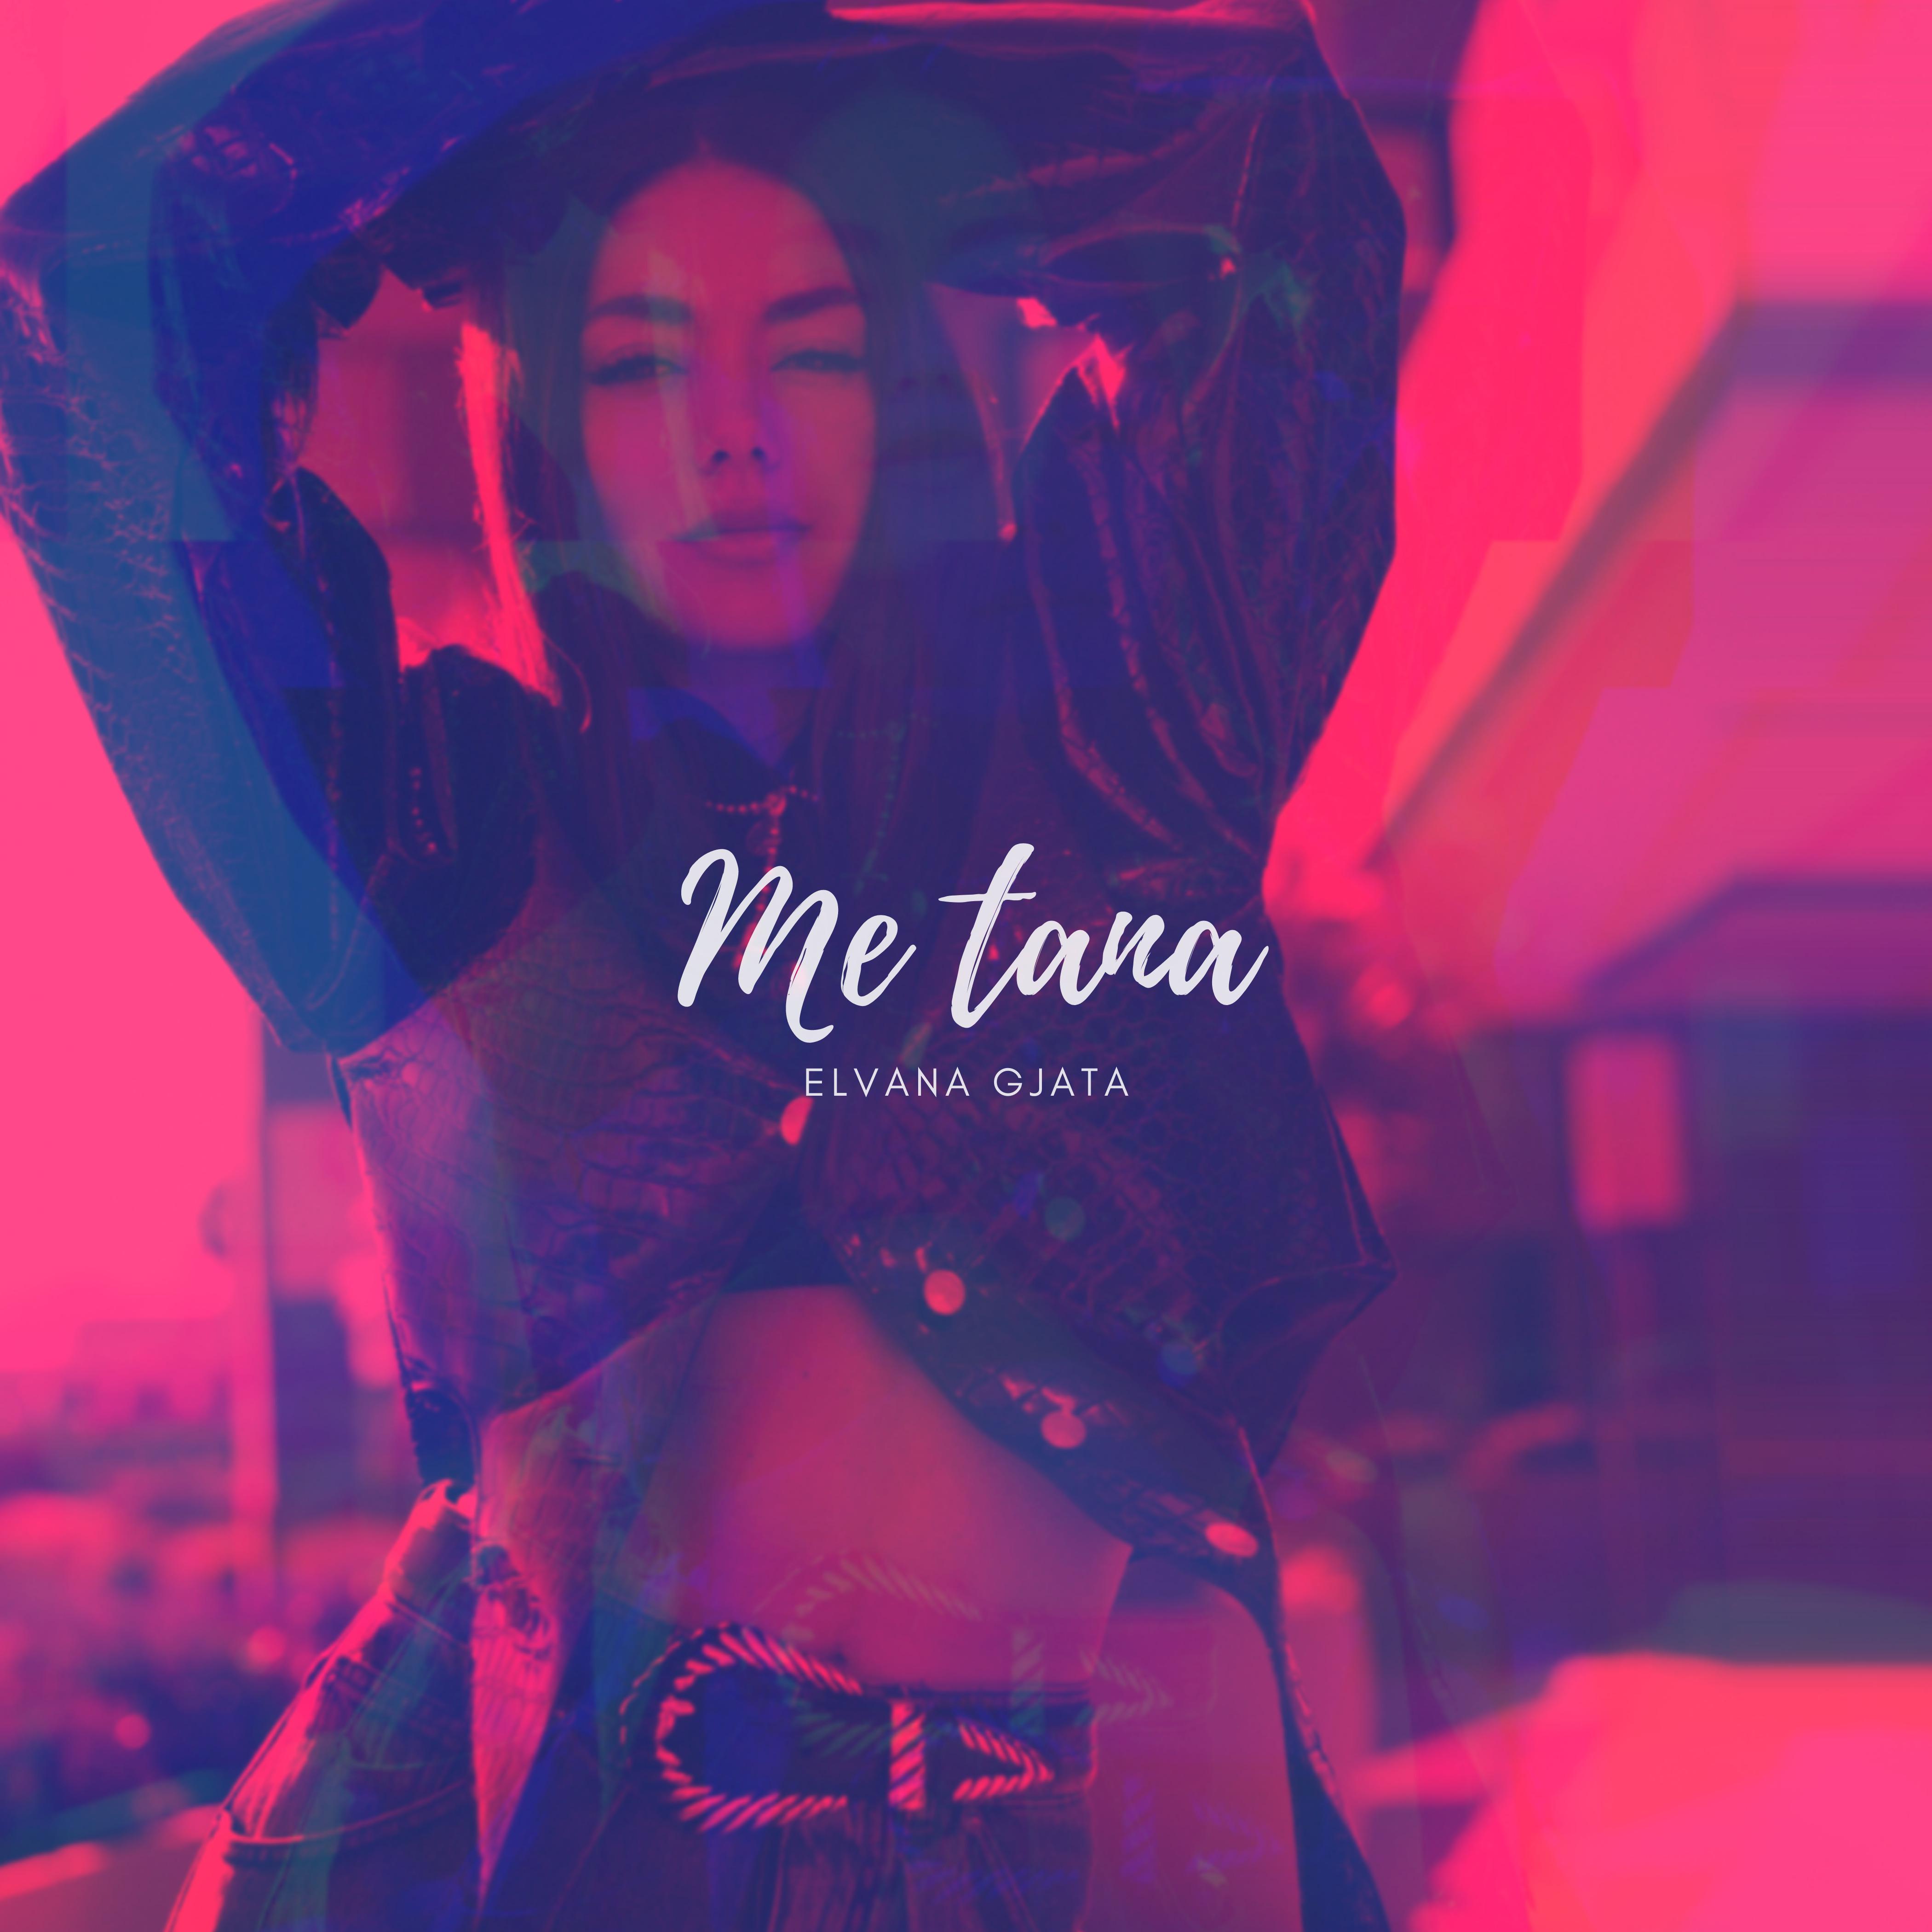 Me tana歌词 歌手Elvana Gjata-专辑Me tana-单曲《Me tana》LRC歌词下载